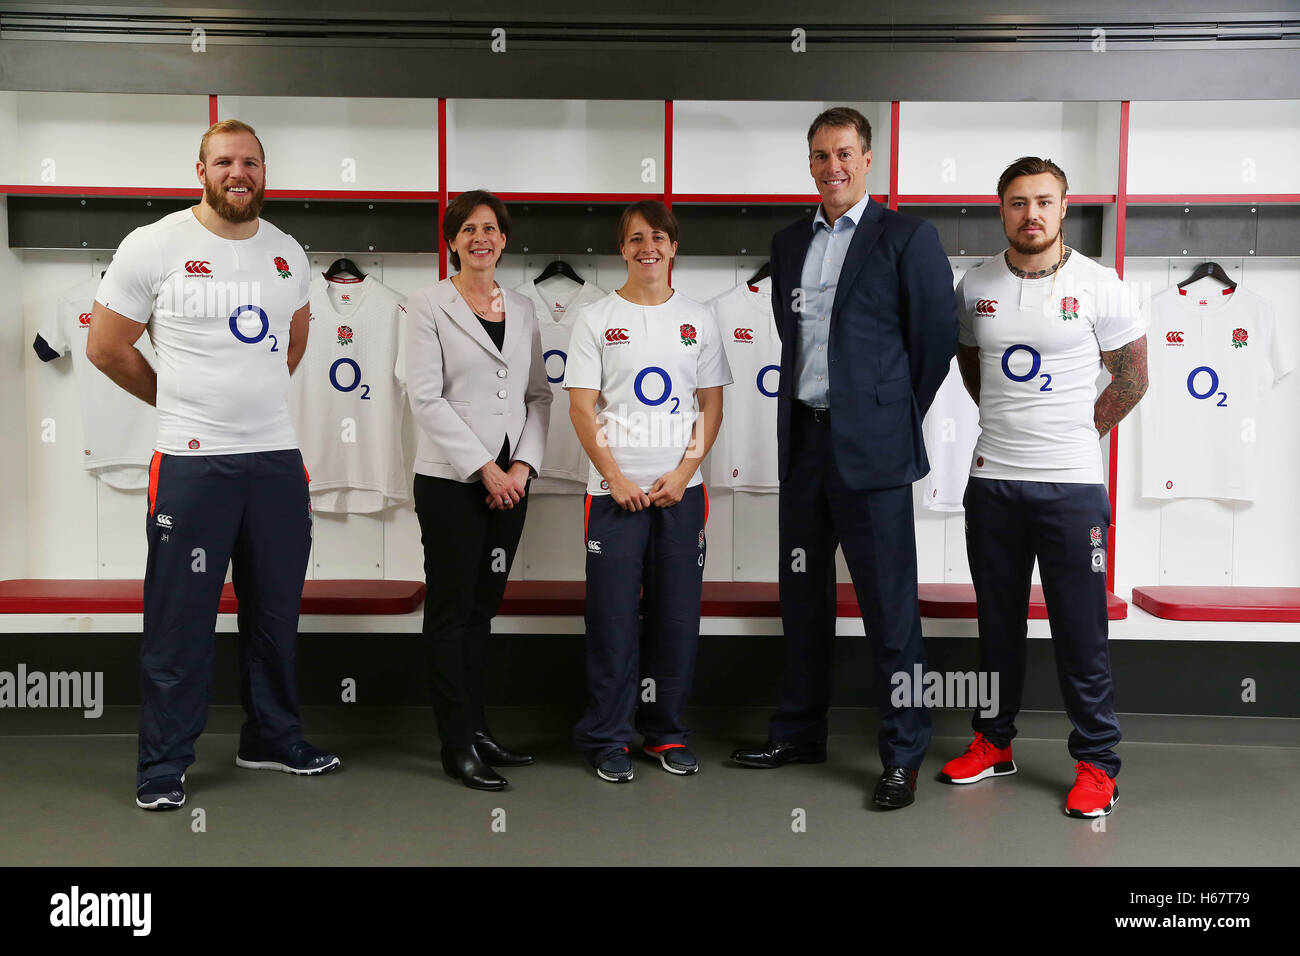 O2 sponsorizzerà la nazionale inglese di rugby immagini e fotografie stock  ad alta risoluzione - Alamy